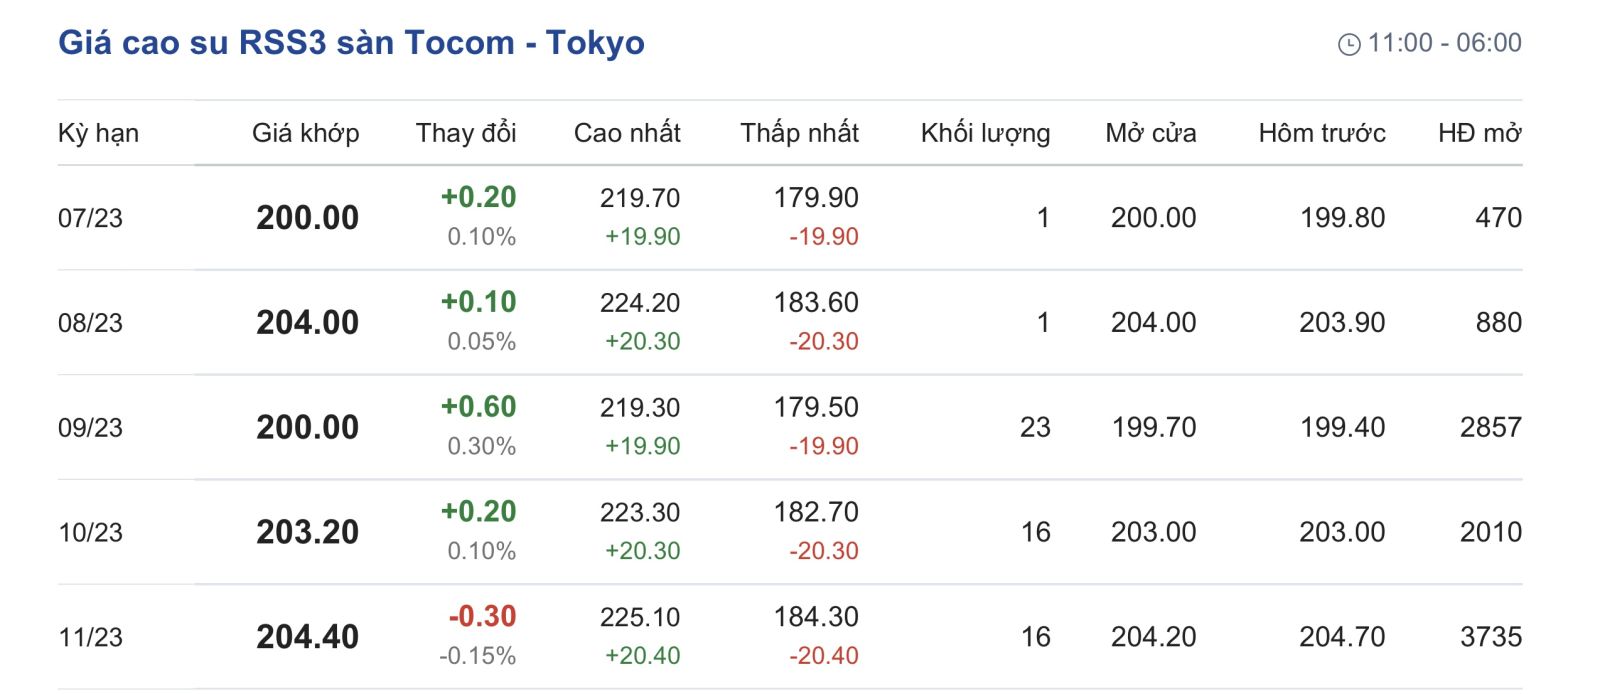 Tại Sở giao dịch hàng hóa Tokyo, giá cao su kỳ hạn giao tháng 07/2023 đạt mức 200 yen/kg, tăng 0,1% (tương ứng 0,2 yen/kg) tại thời điểm khảo sát 6h00 (giờ Việt Nam).